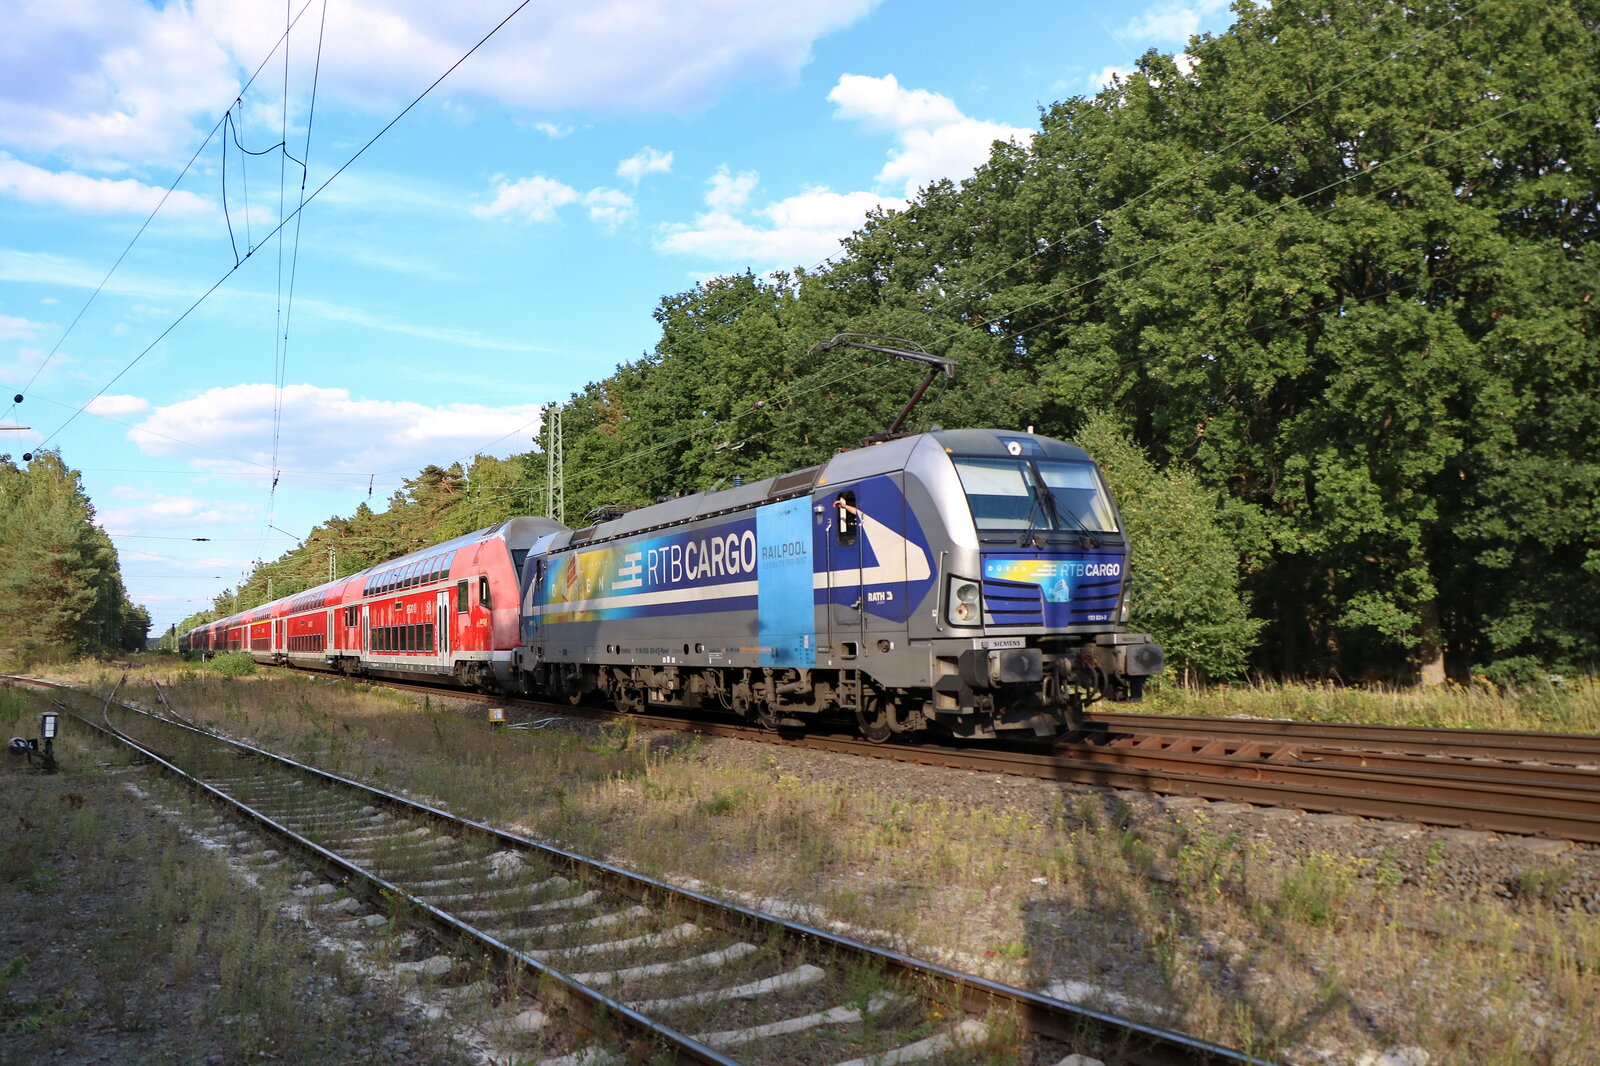 Im Rahmen der Kreis Düren Tage 2022 hatte 193 824  Düren  der Rurtalbahn Cargo die Aufgabe den Sonderzug aus Münster zurück nach Düren zu bespannen.
Sythen 2.9.22 